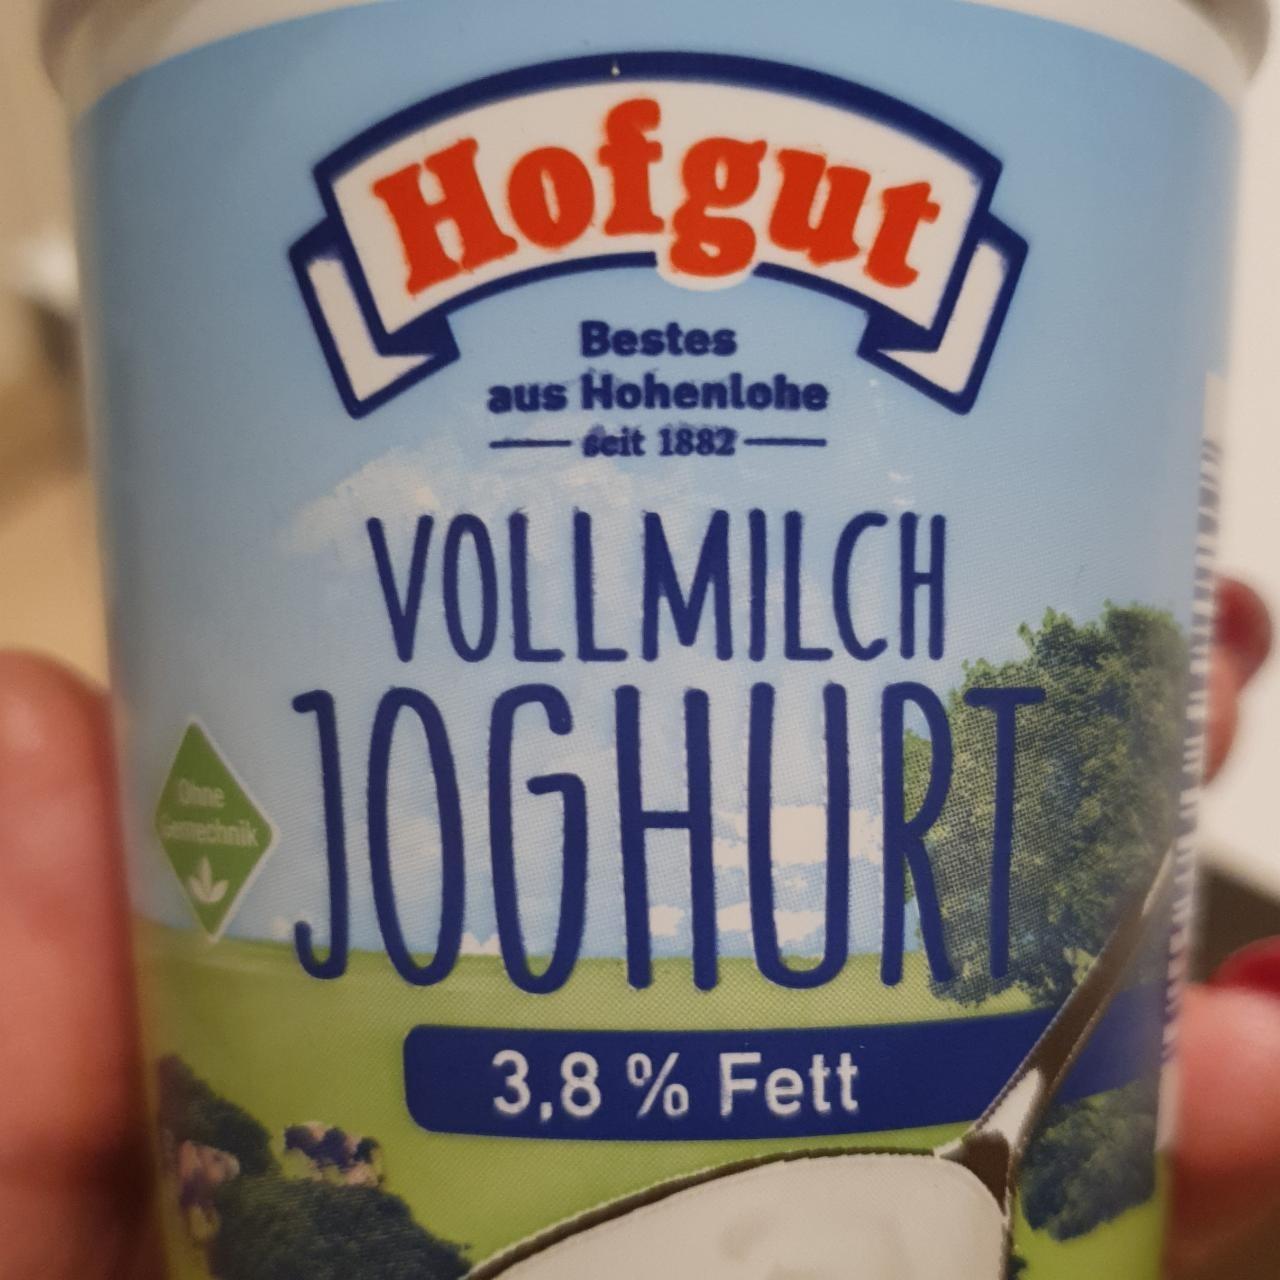 Фото - Йогурт 3.8% Vollmilch Joghurt Hofgut